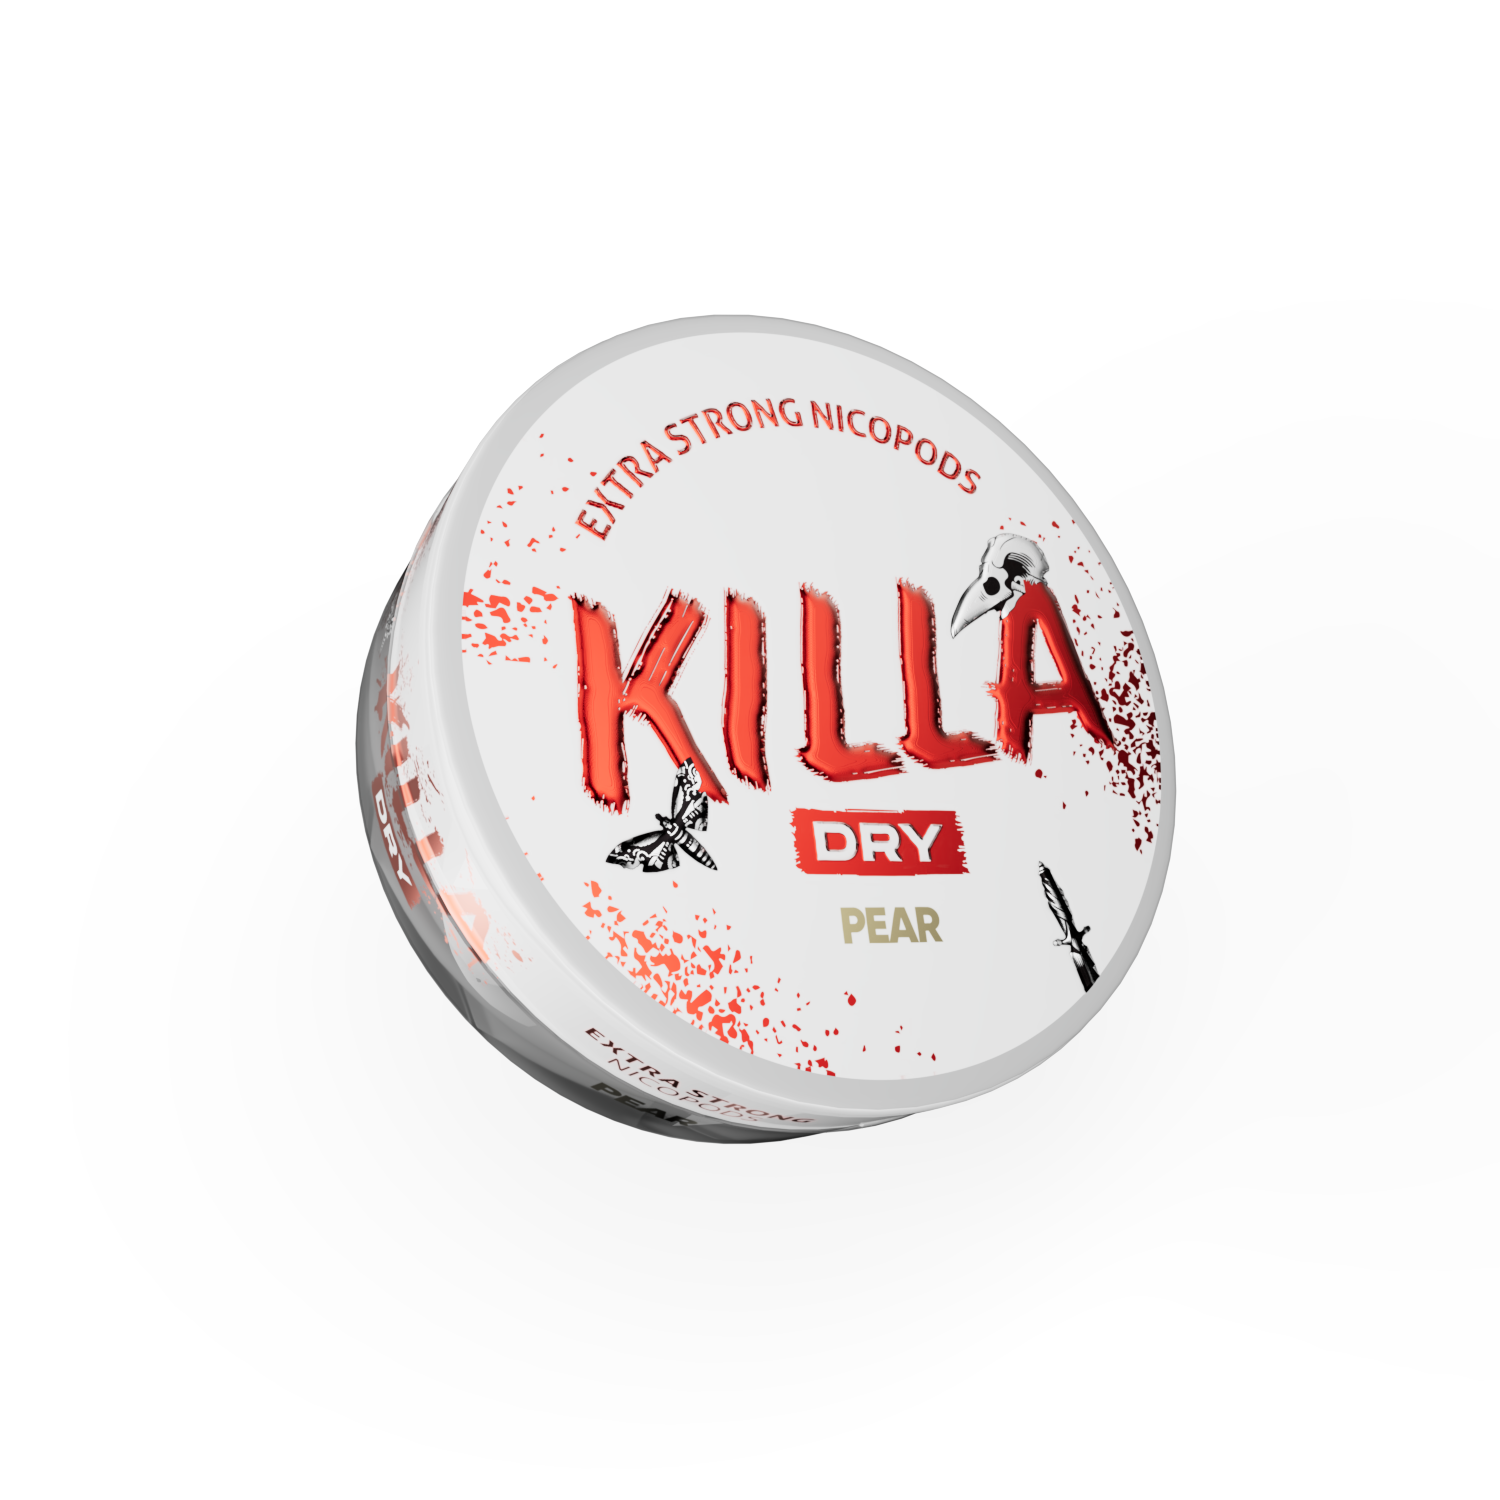 Killa_Dry_Pear_2